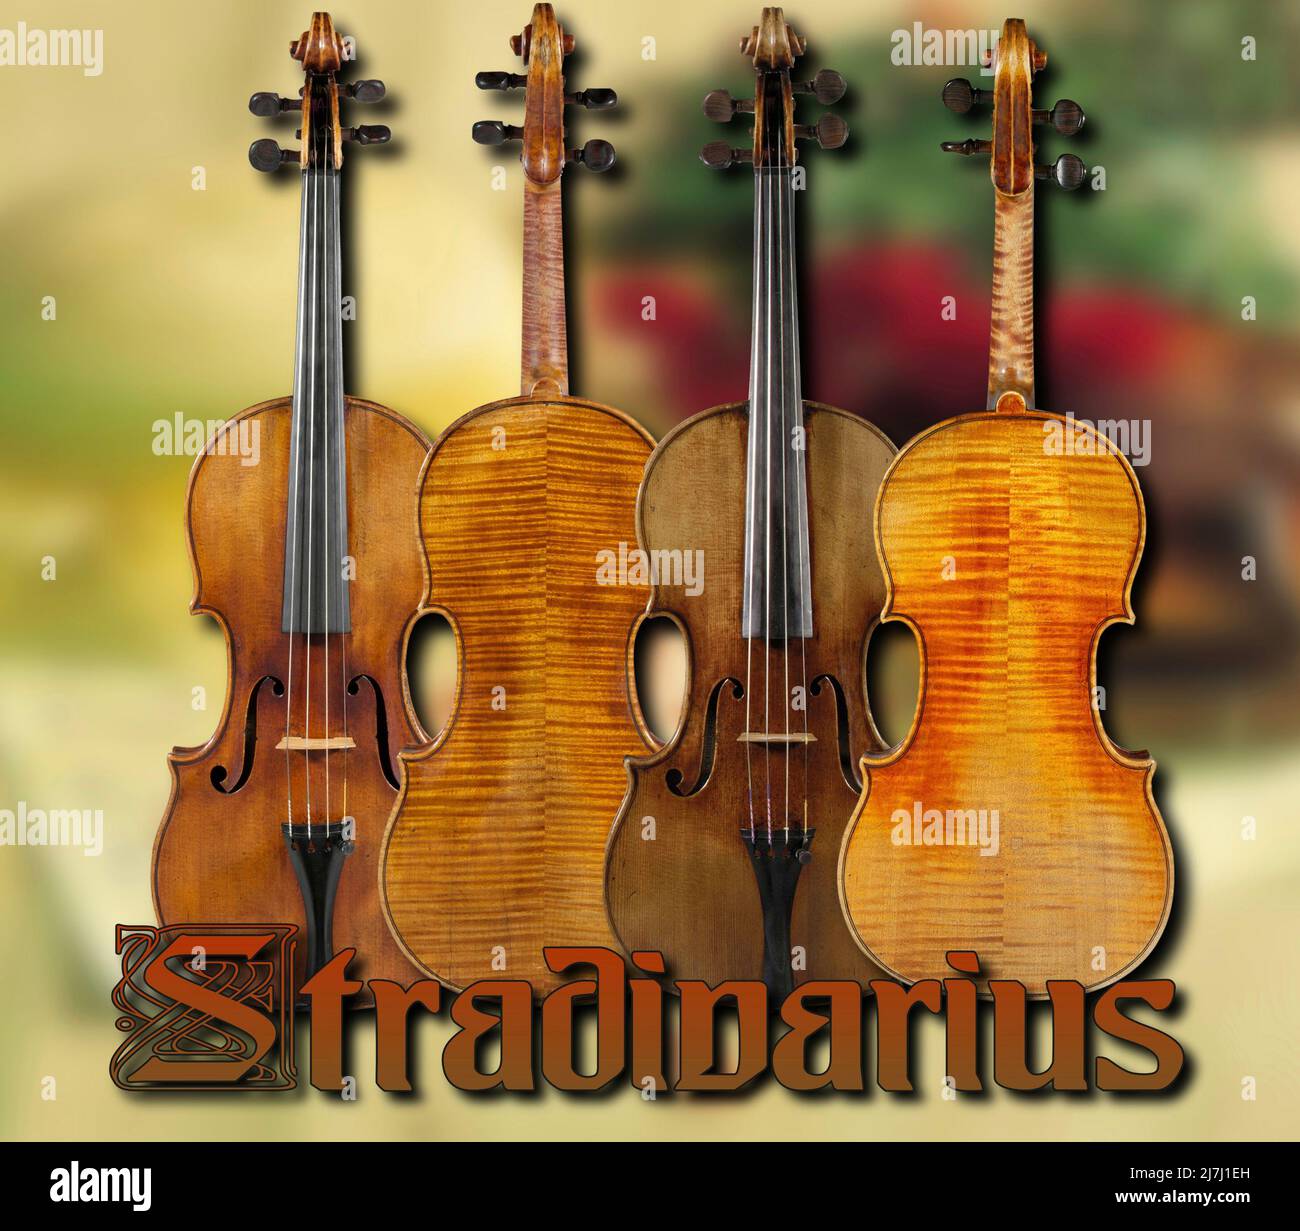 Certains violons créés par le célèbre artisan italien Antonio Stradivari (Stradivarius) seraient les meilleurs violons du monde. Banque D'Images